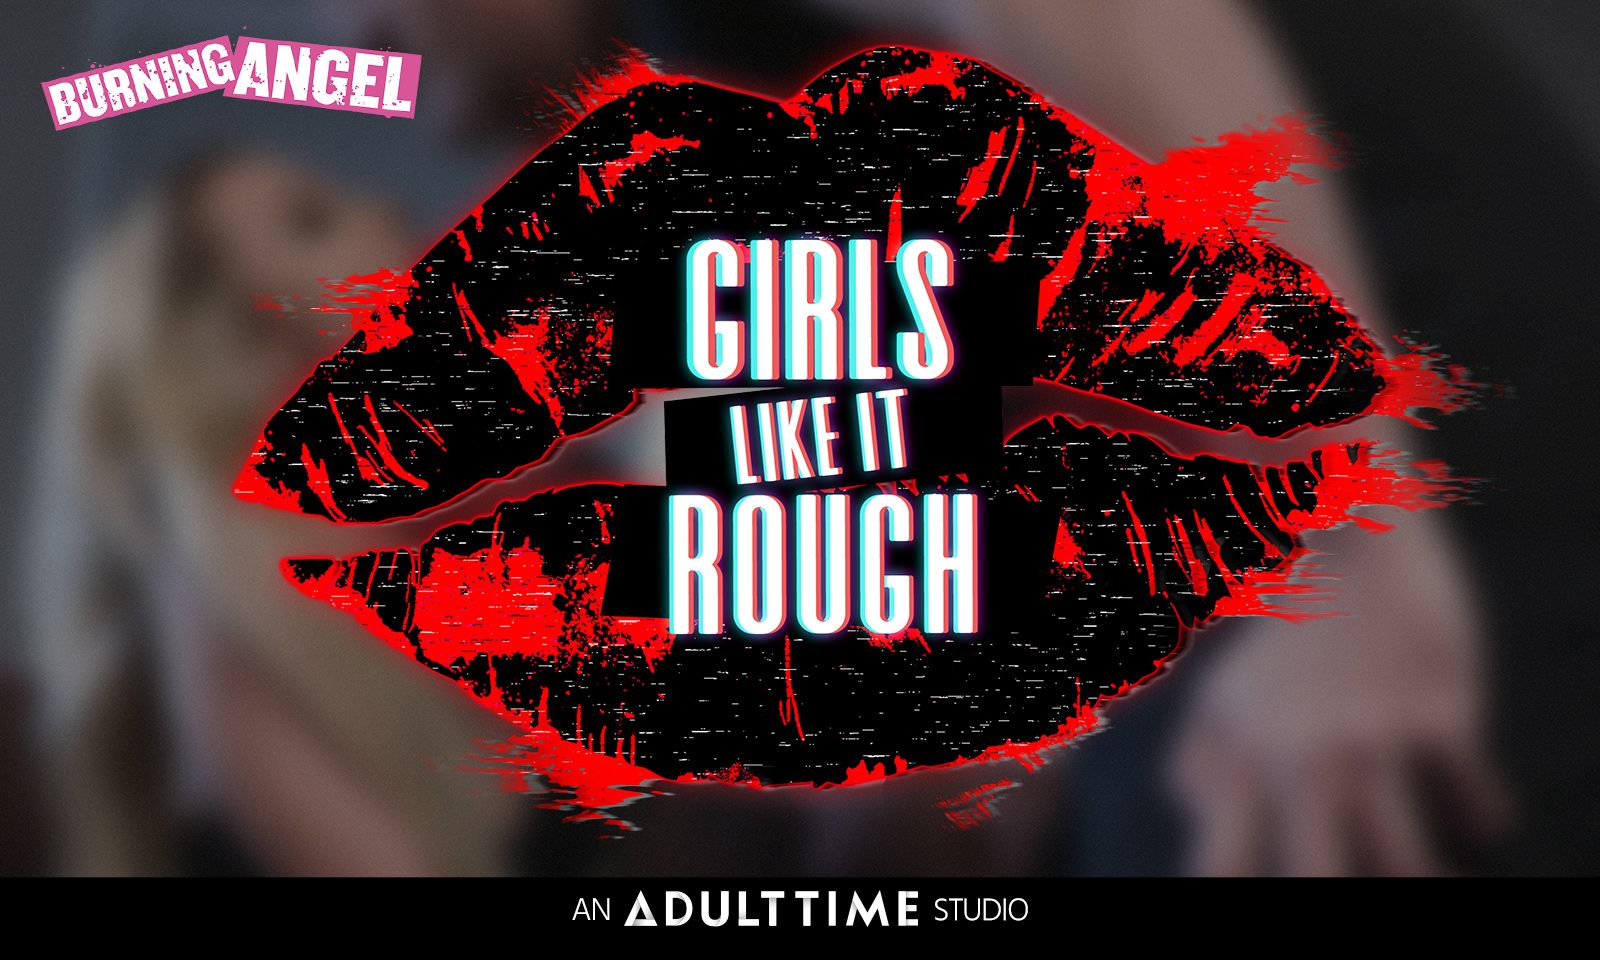 New BurningAngel Production Posits That 'Girls Like It Rough'